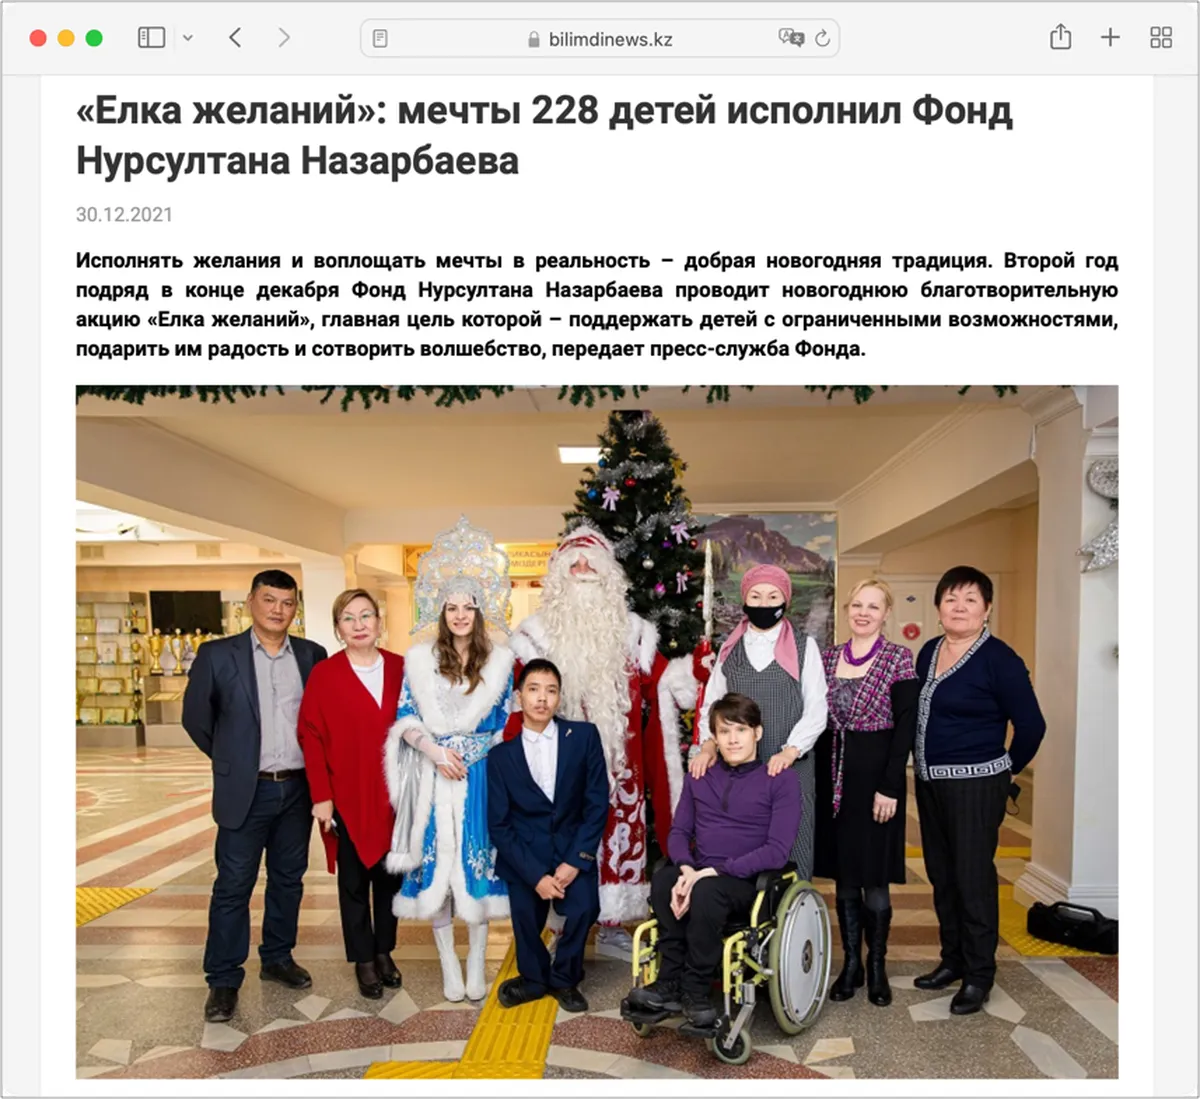 На Новый год «Фонд Нурсултана Назарбаева» «исполнил мечты» 228 детей-инвалидов: им вручили кукольный домик, планшеты для обучения, спортивную одежду и другие подарки.